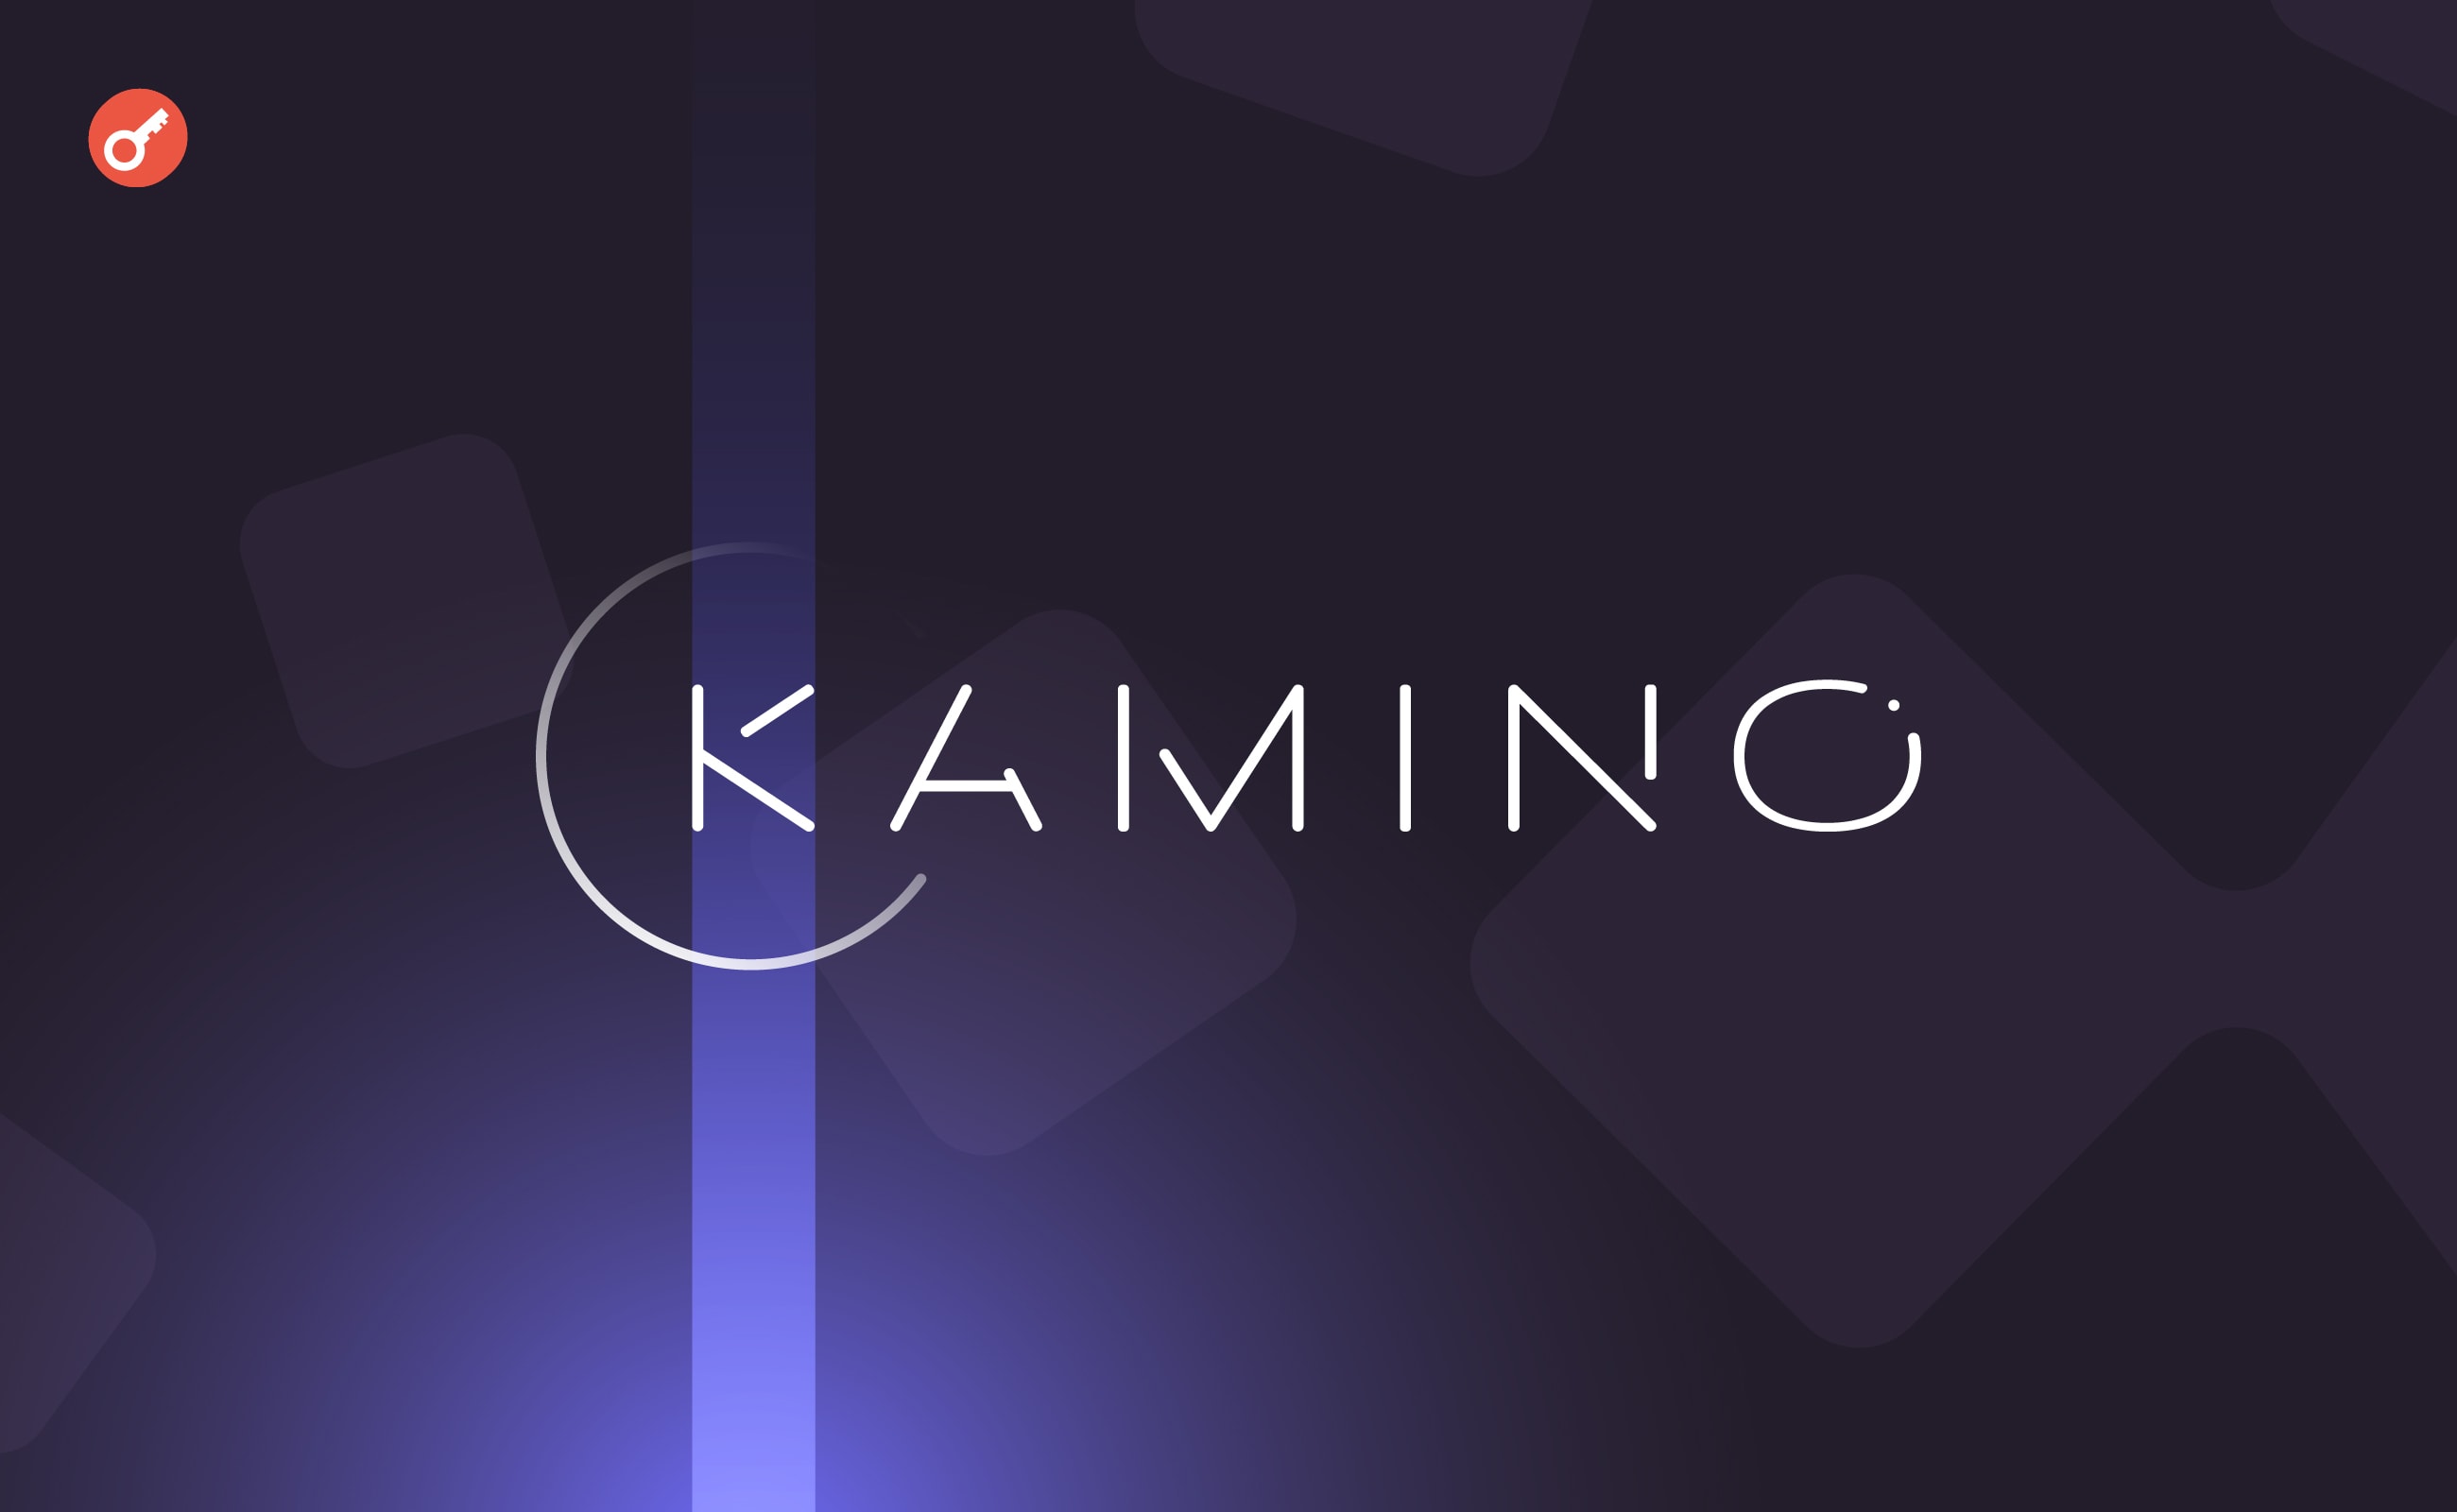 Команда проекта Kamino Finance объявила о проведении аирдропа в апреле. Заглавный коллаж новости.